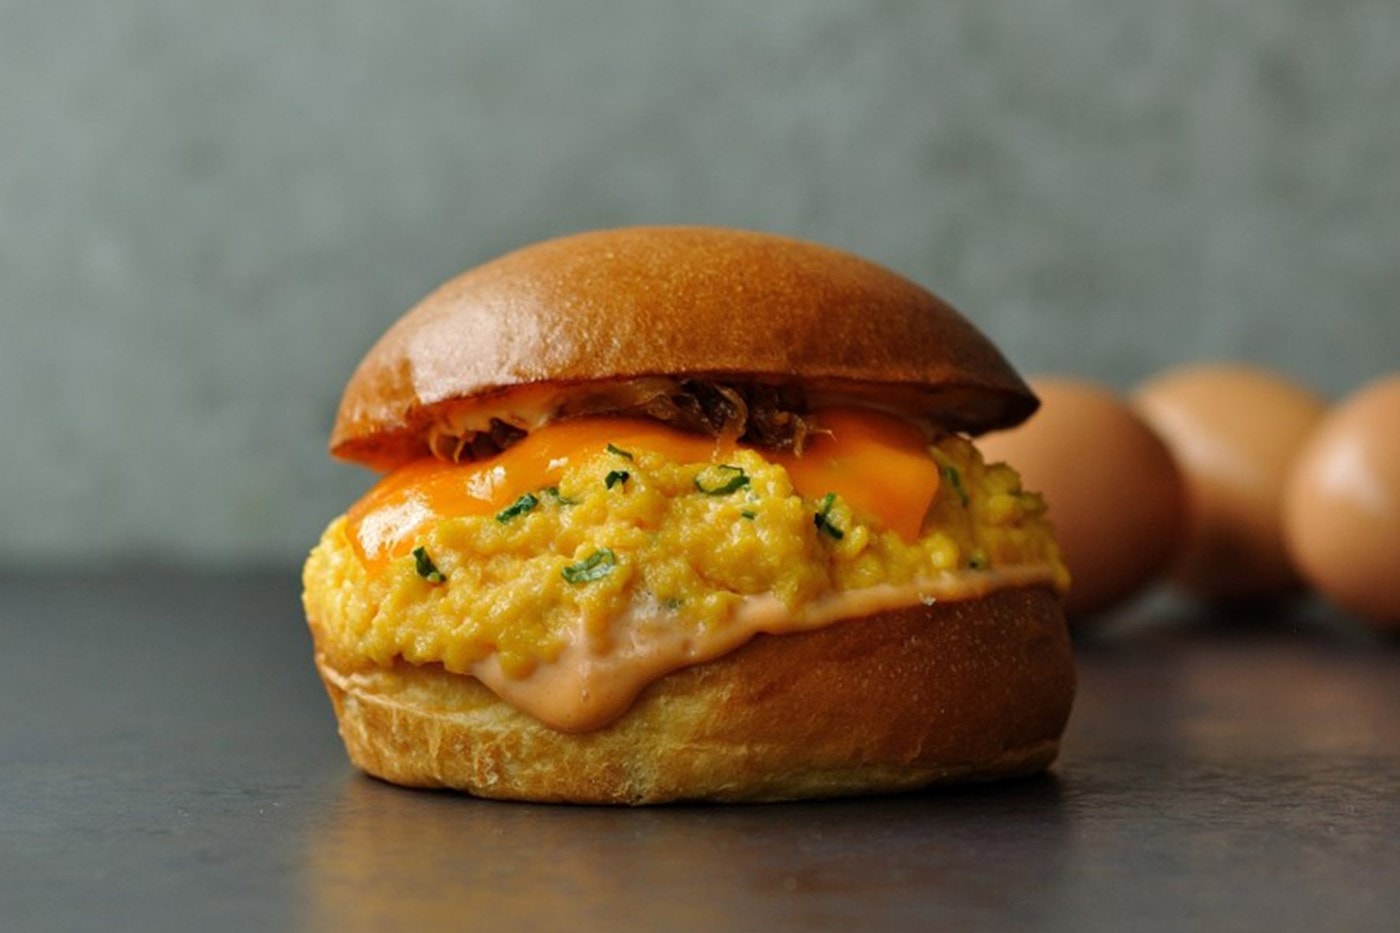 LA 人氣「蛋料理」餐廳 Eggslut 於東京開設首間海外分店